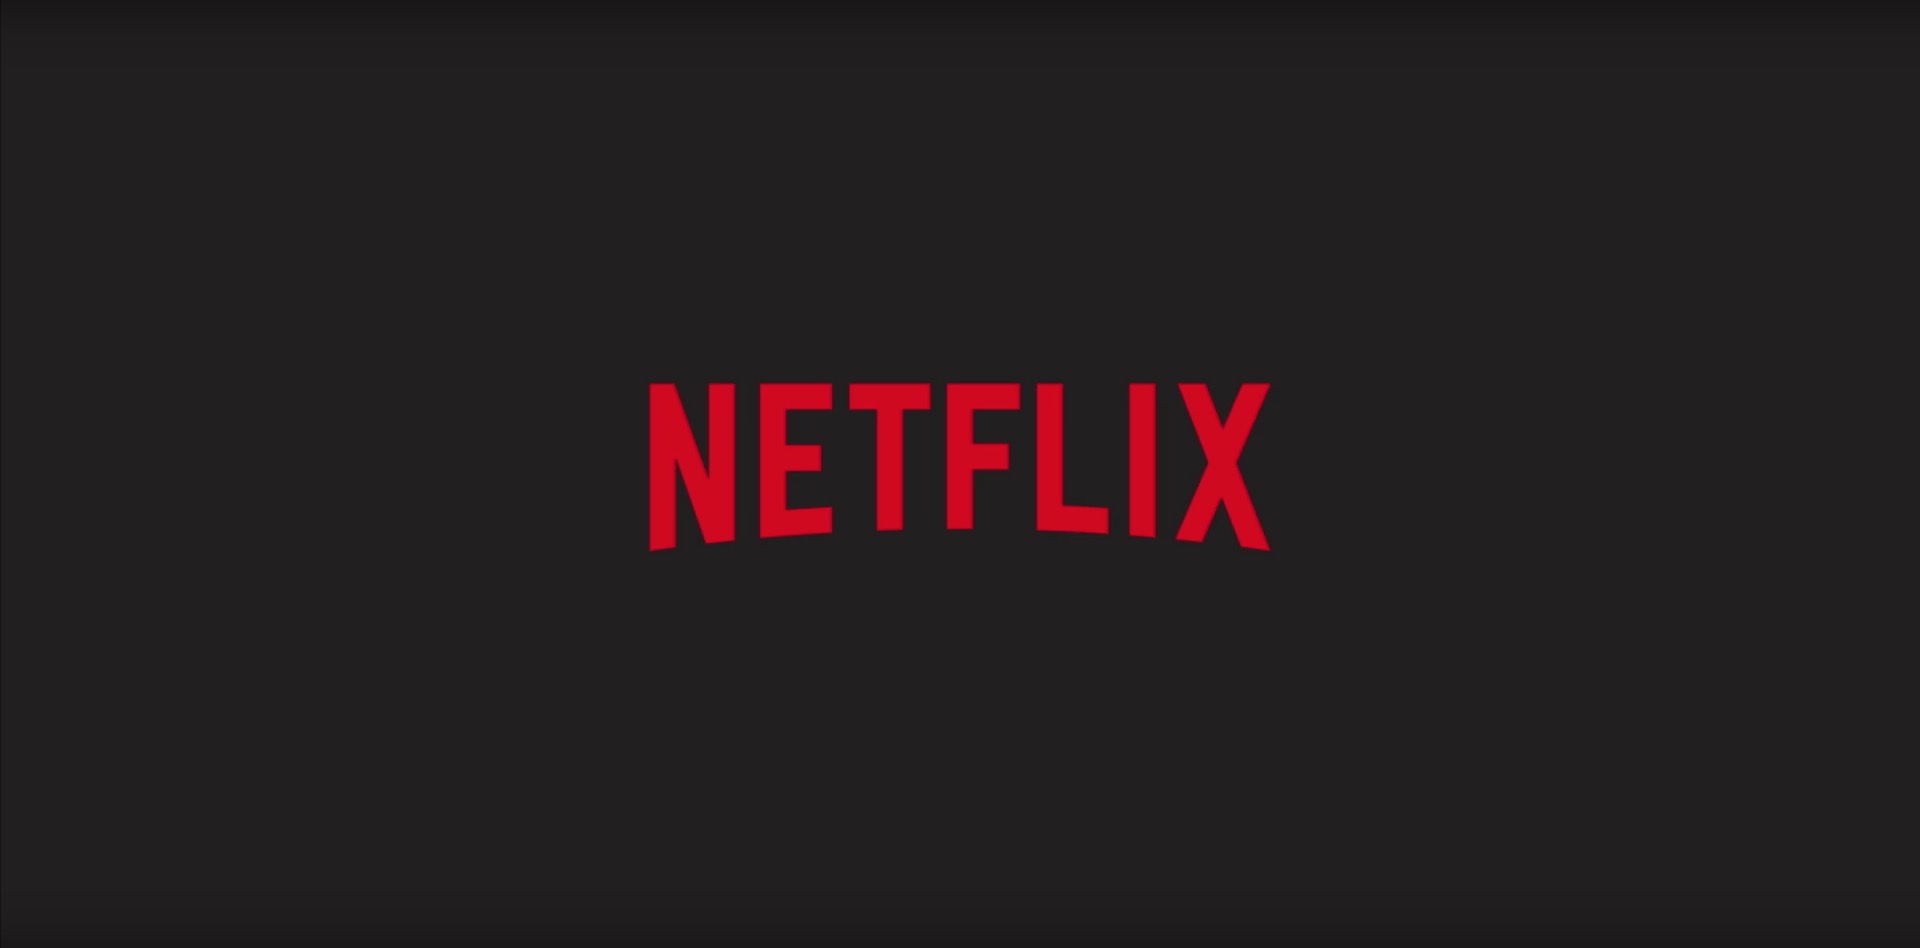 Netflix in yeni türk dizisine eklenen son isim Birkan Sokullu oldu